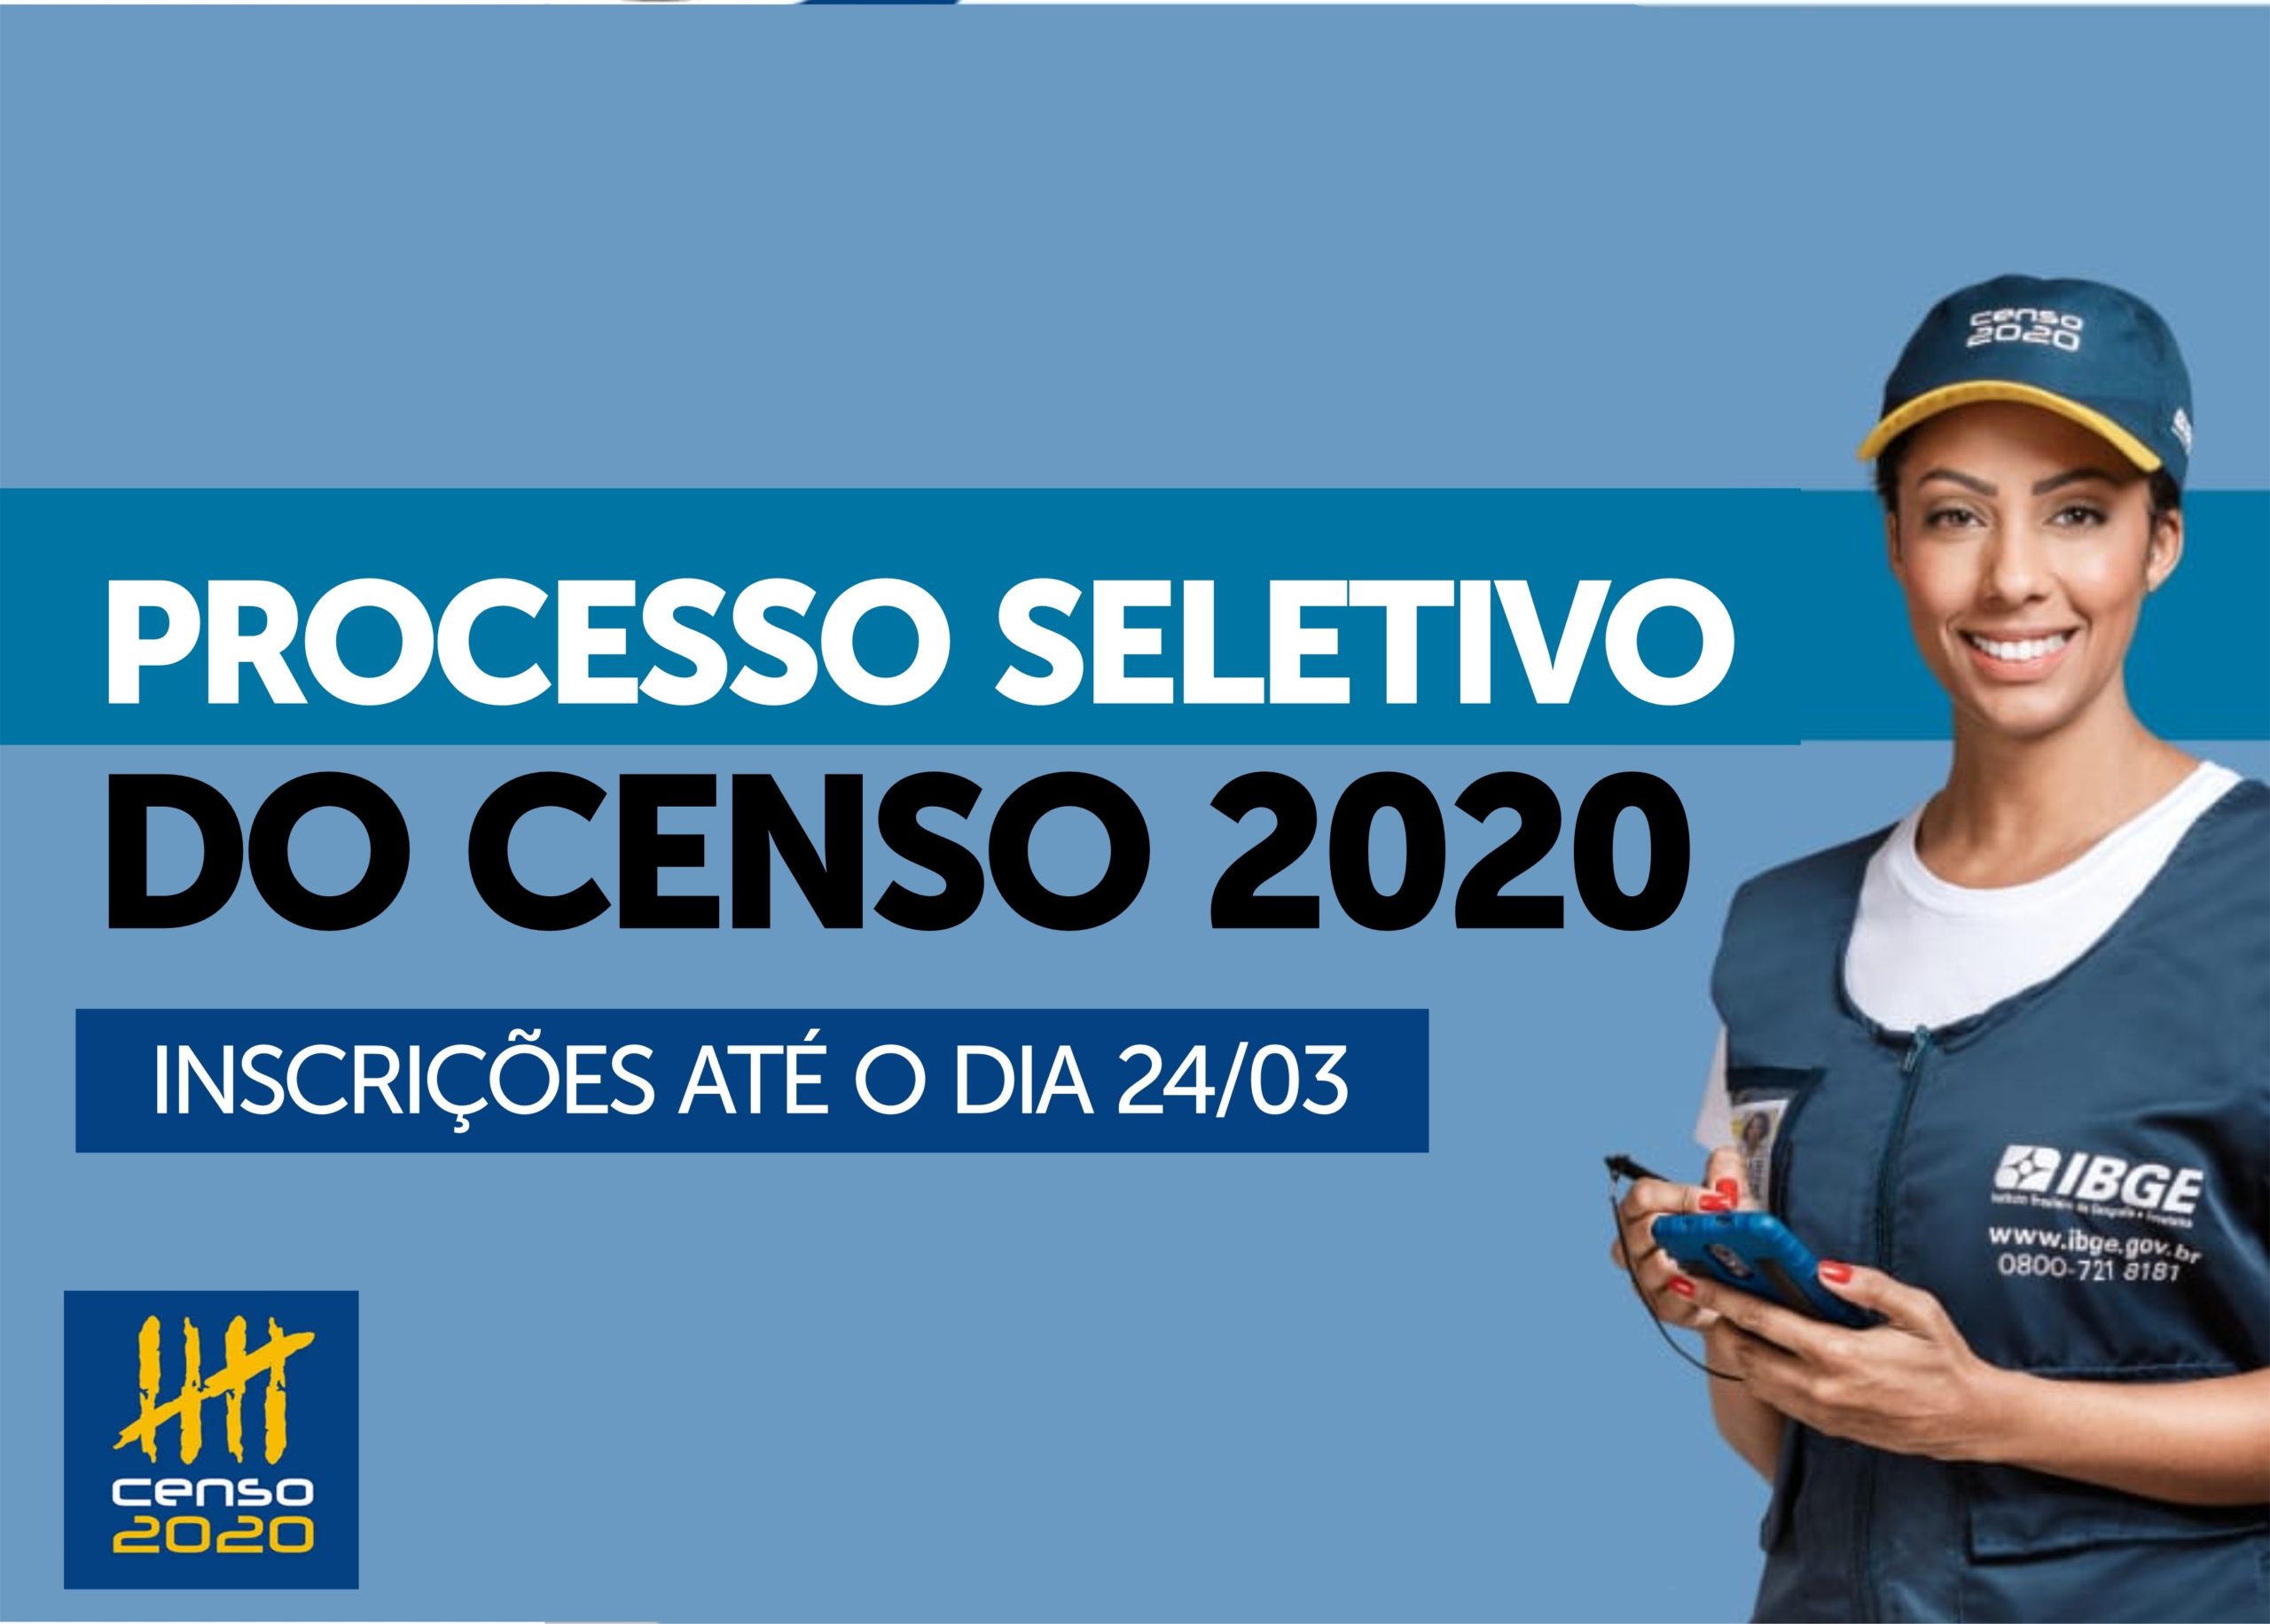 IBGE REALIZARÁ PROCESSO SELETIVO PARA REALIZAÇÃO DO CENSO 2020